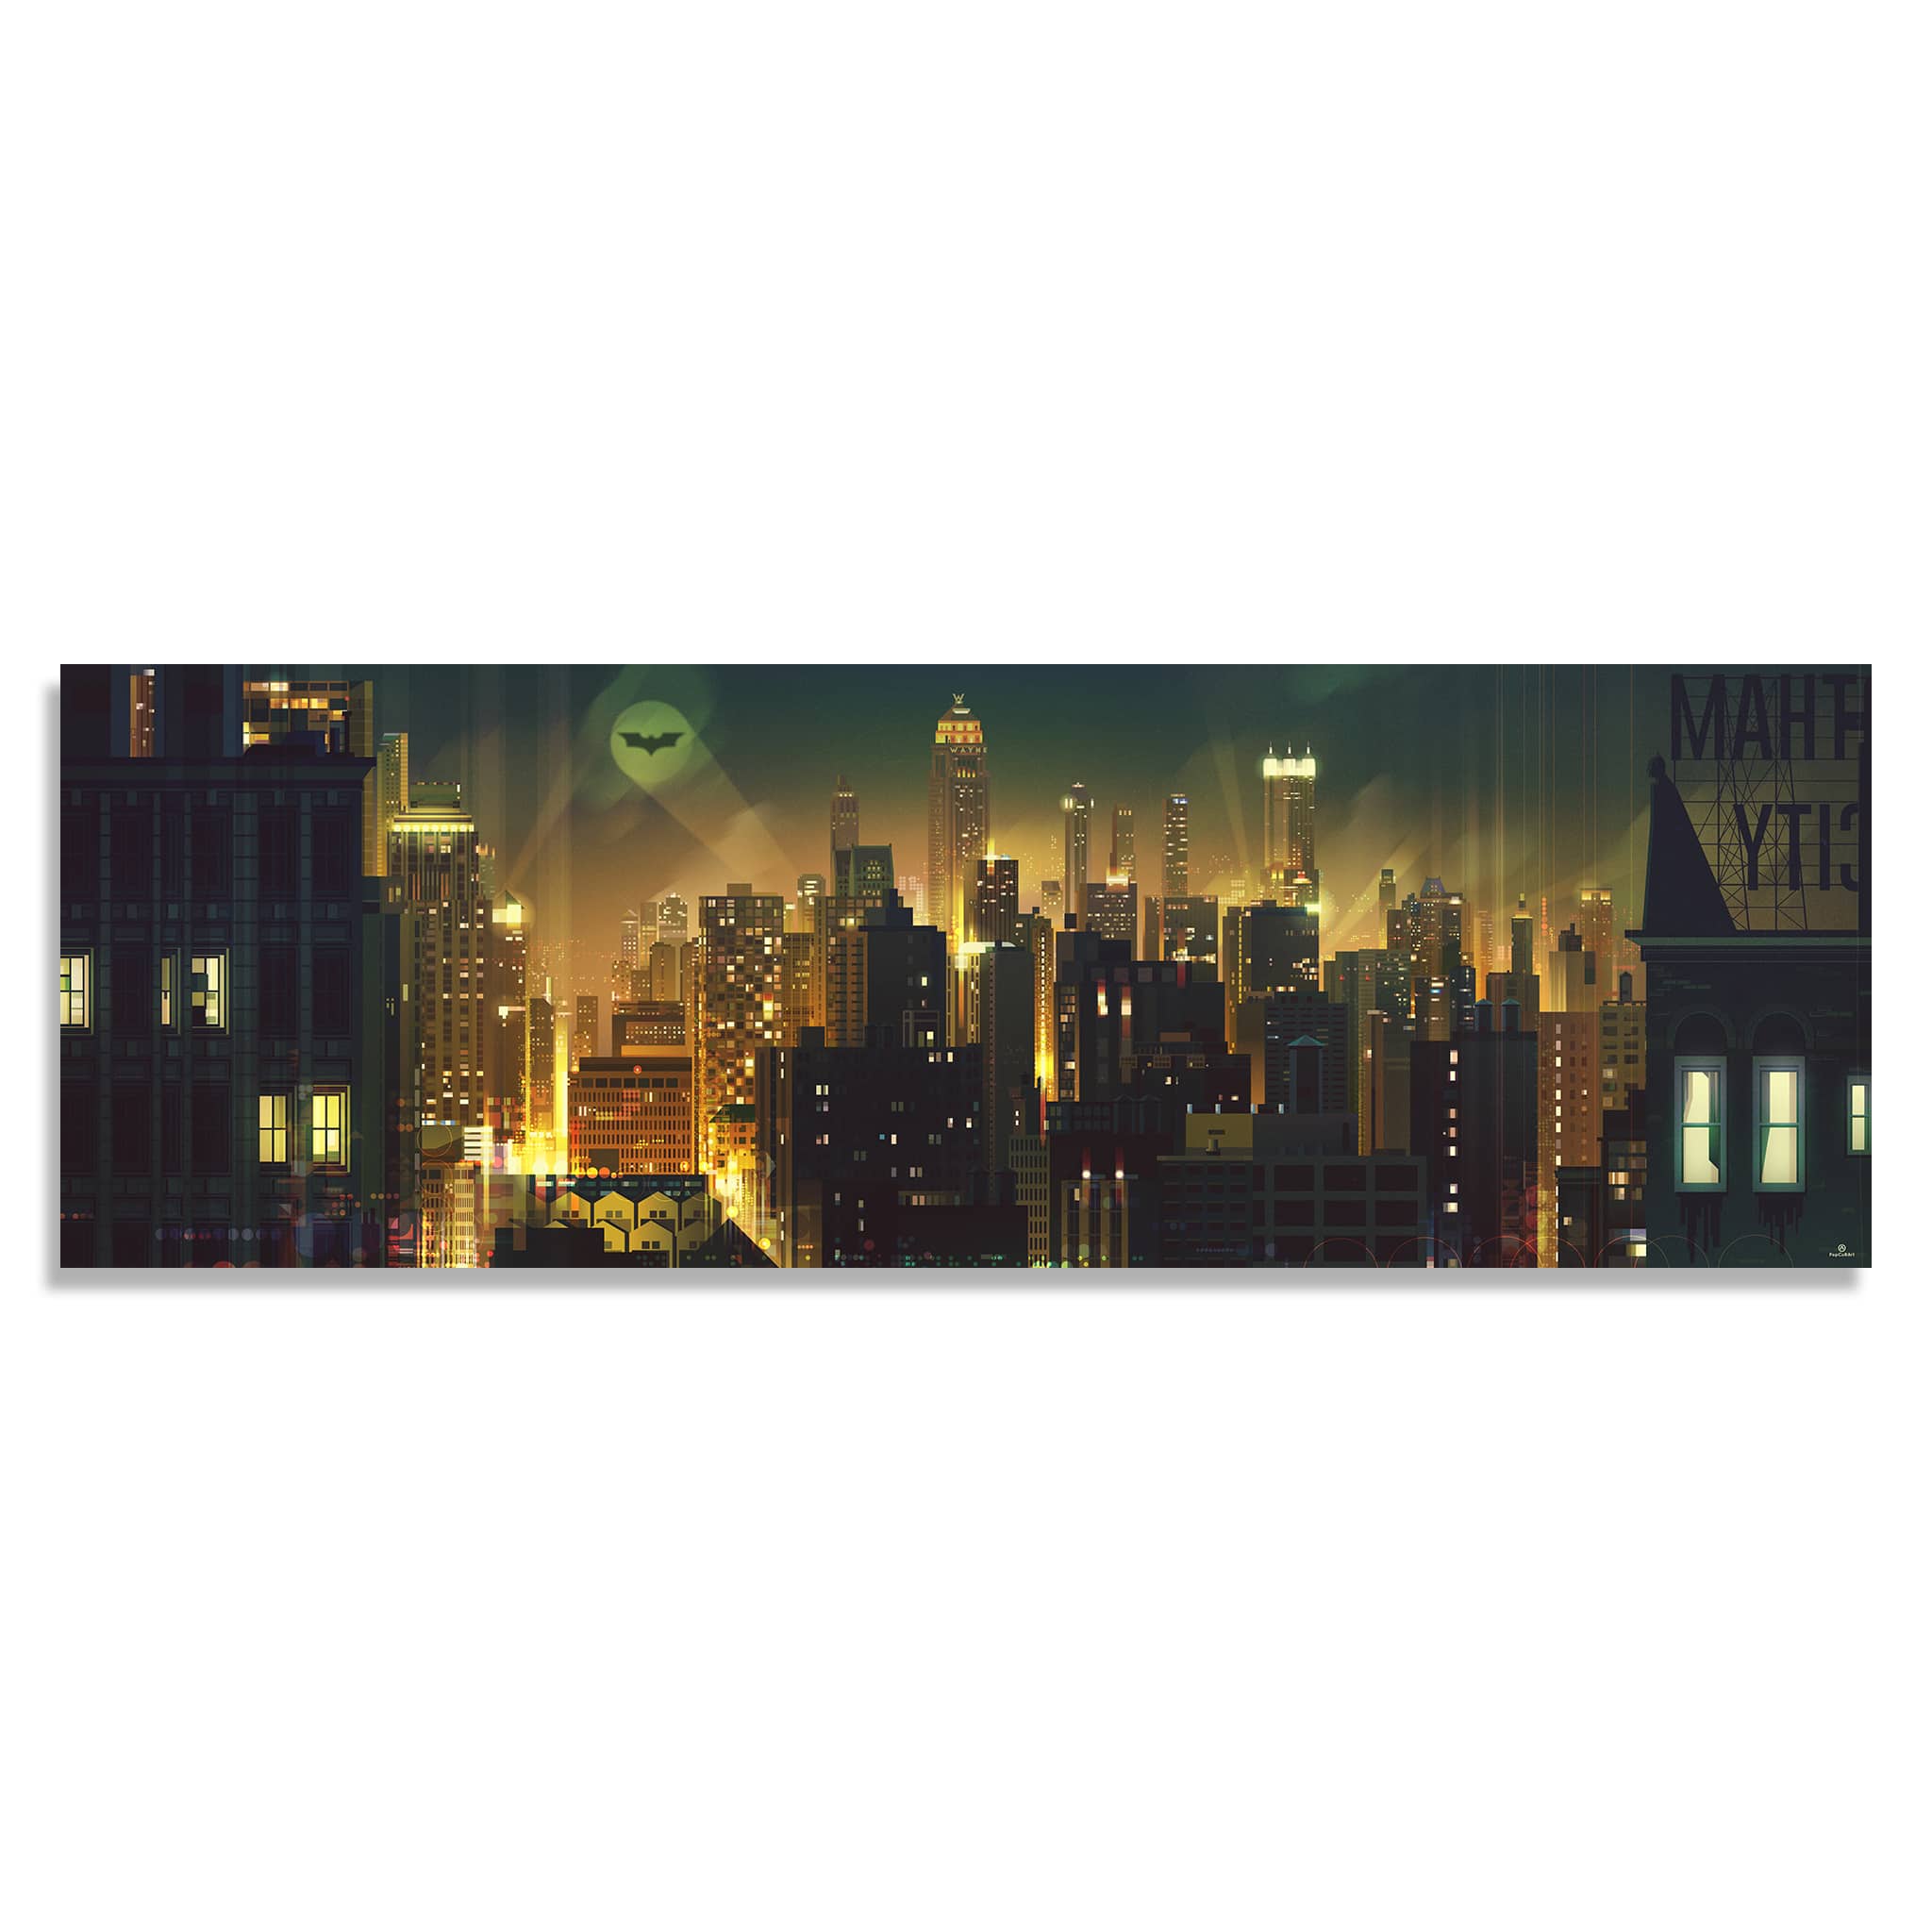 Gotham (Original) by James Gilleard | PopCultArt